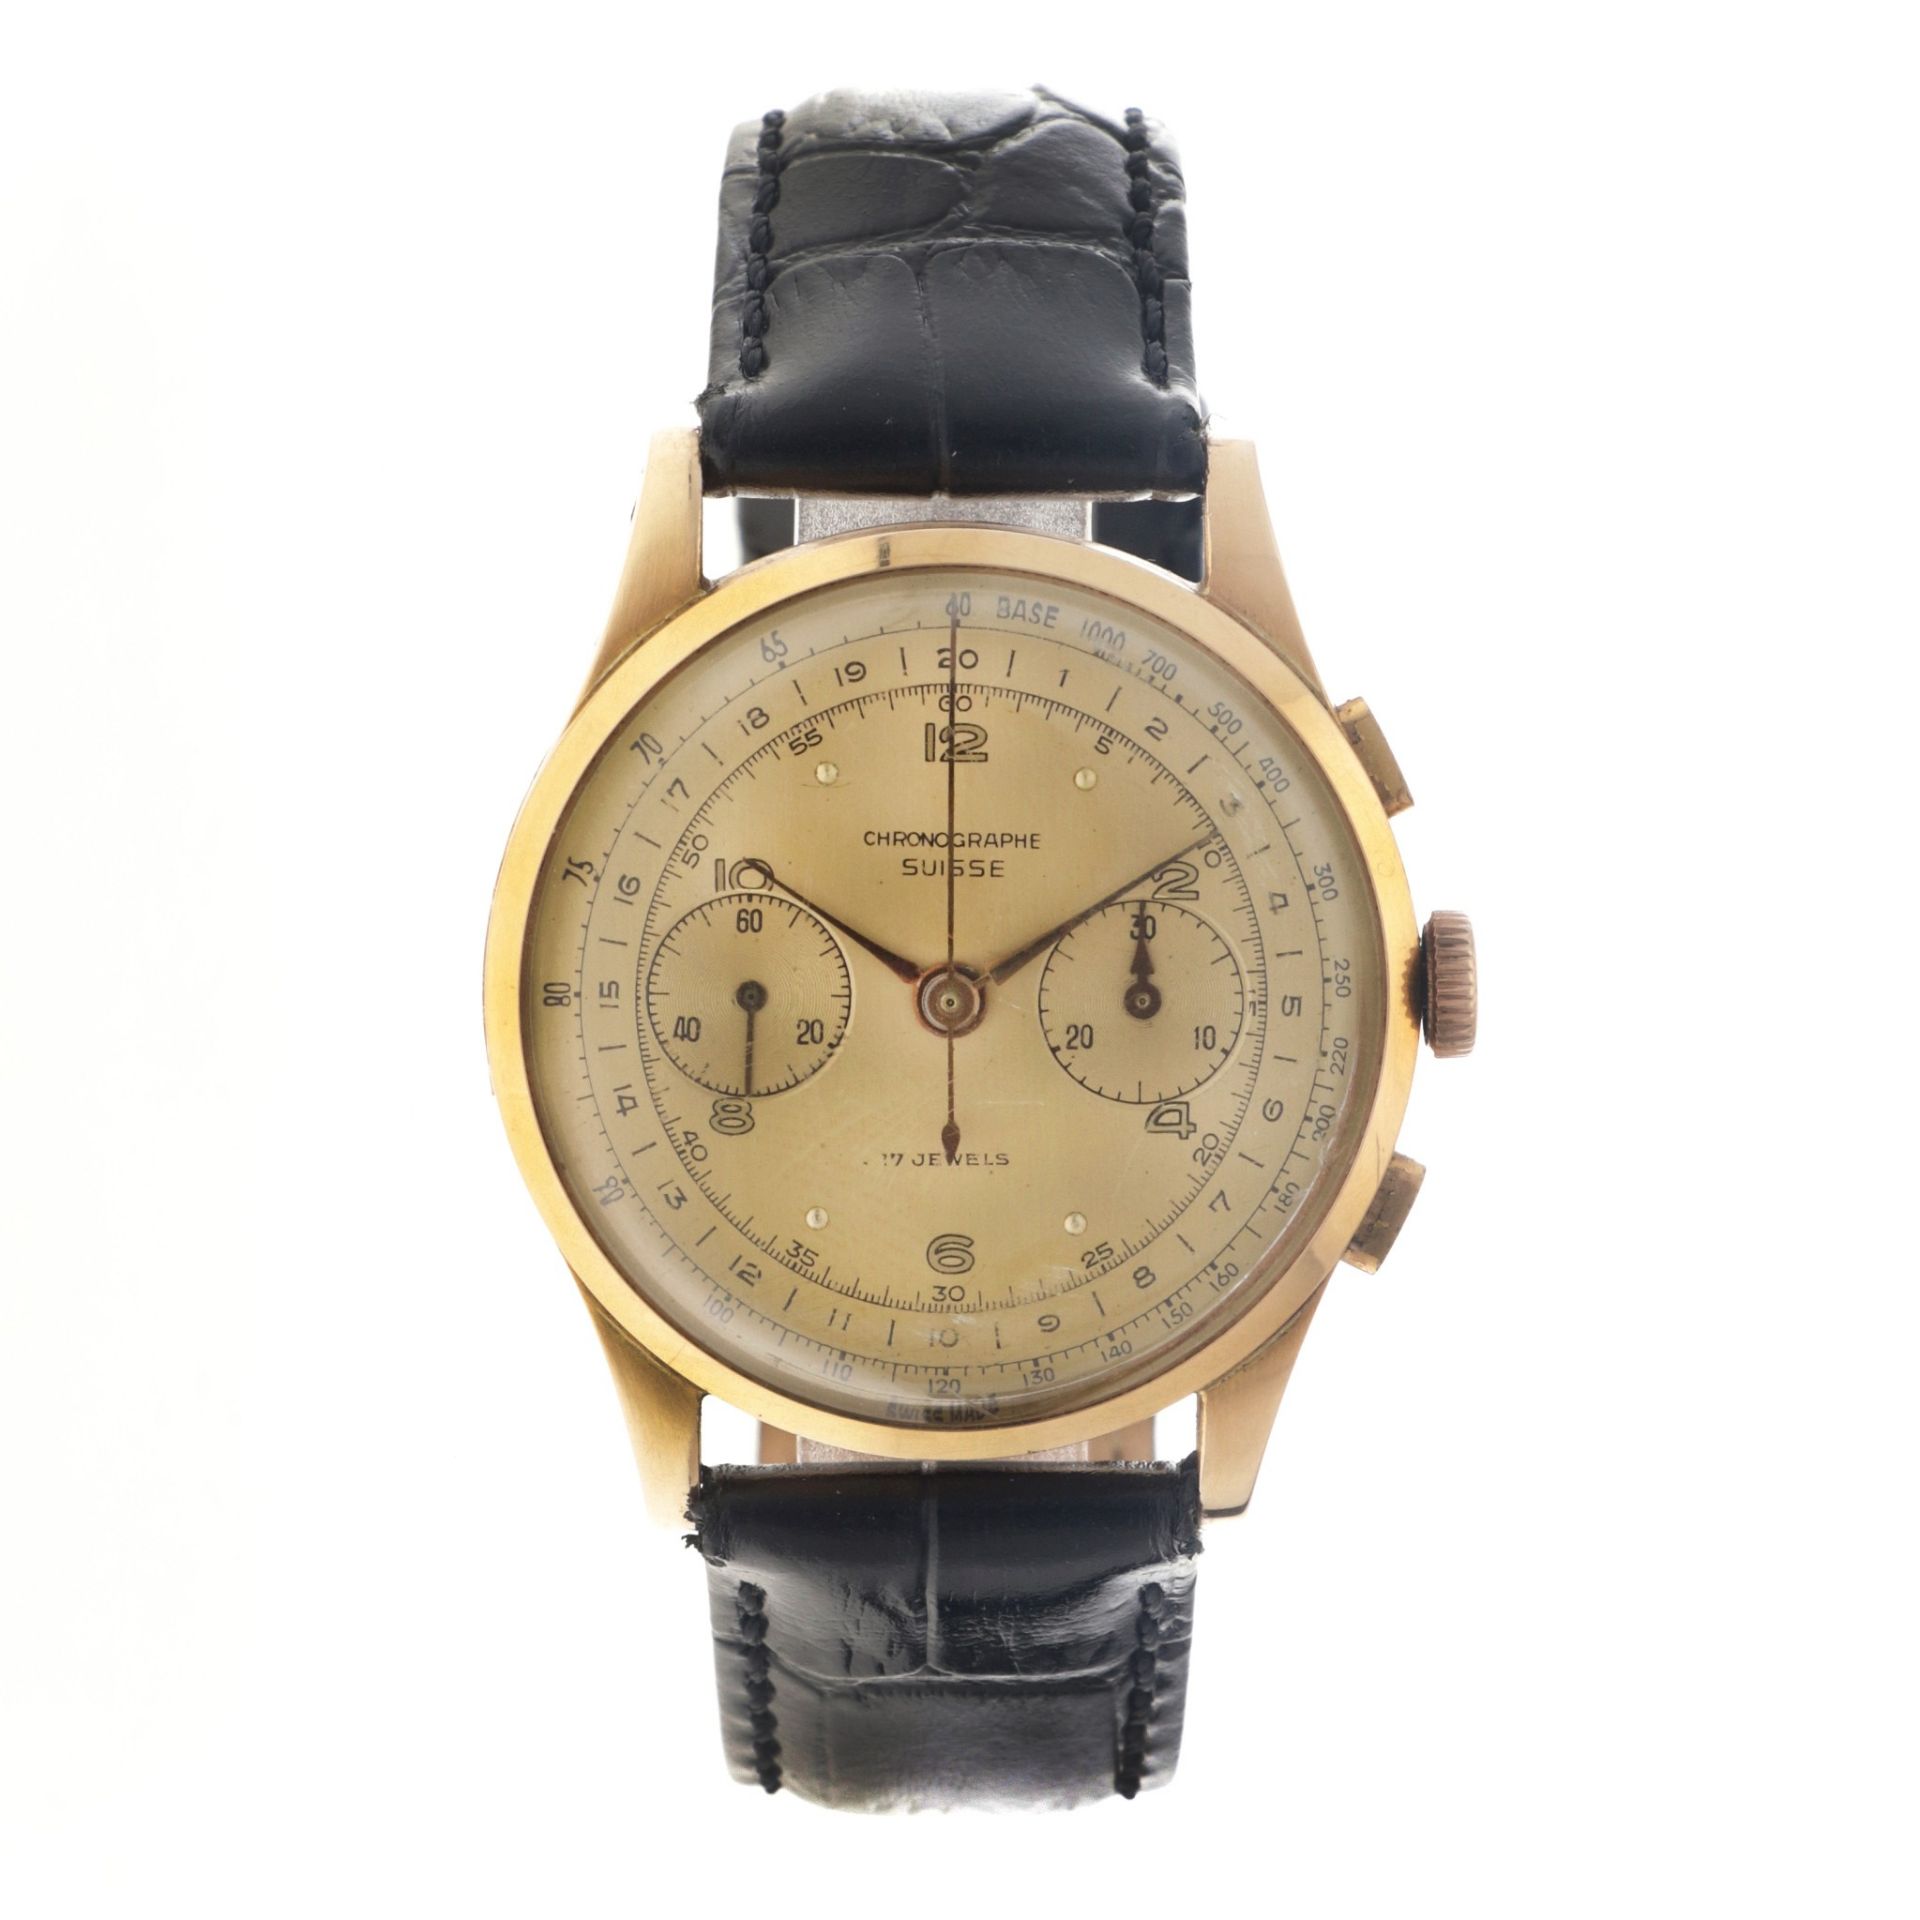 No Reserve - Chronograph Suisse 18K. - Men's watch.
